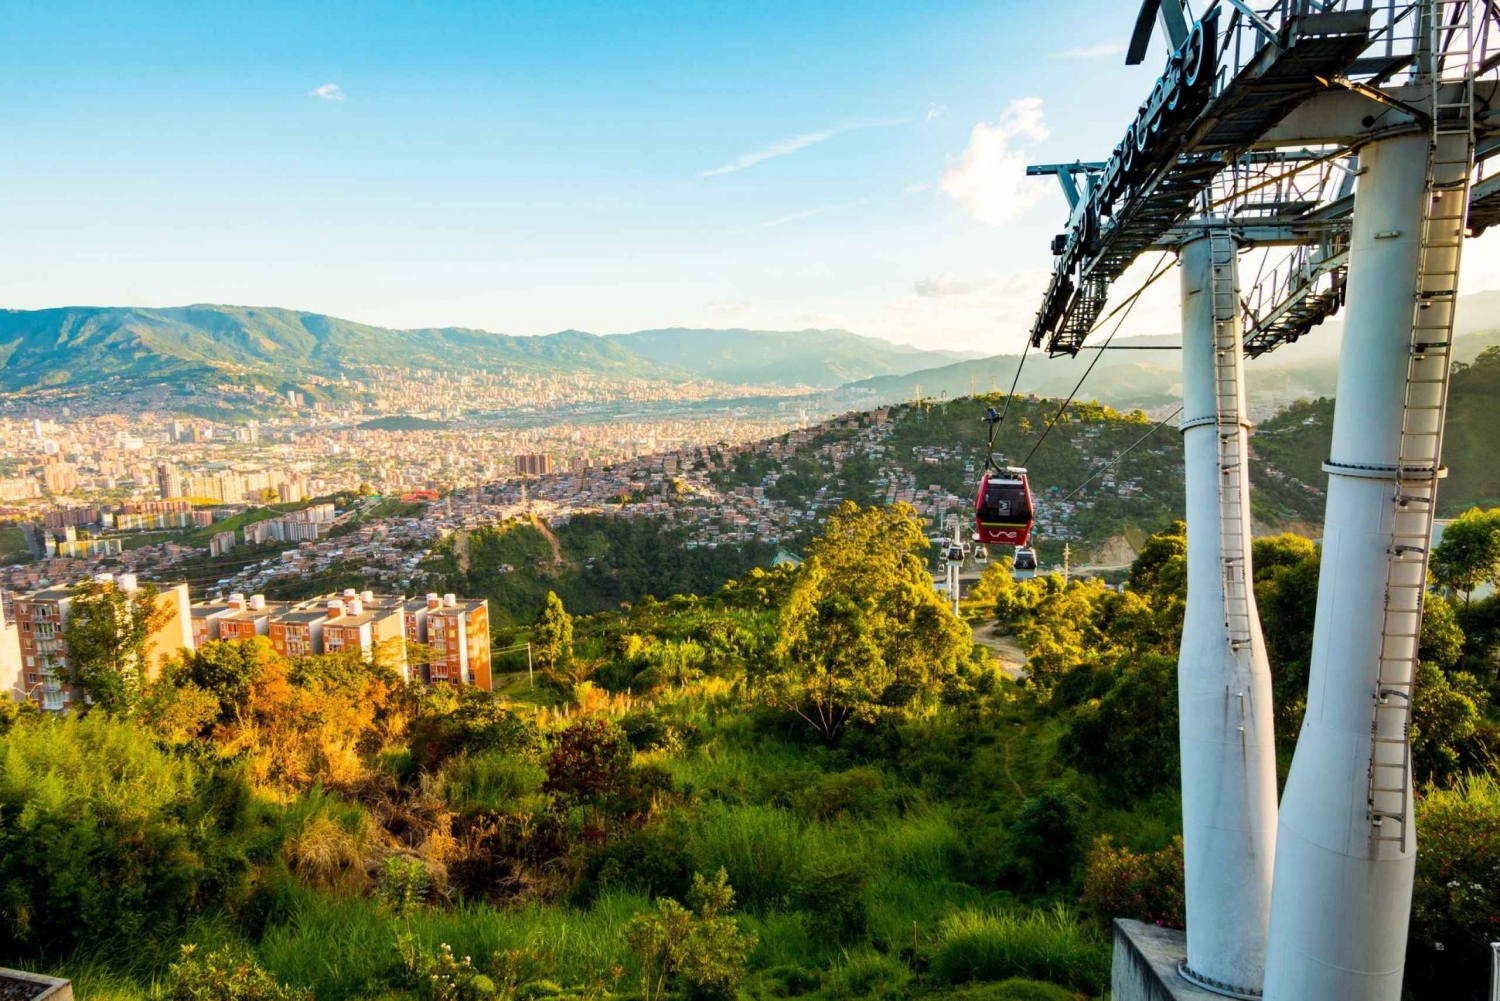 Una Mirada a Colombia: Tour de 5 días por Medellín y Cartagena